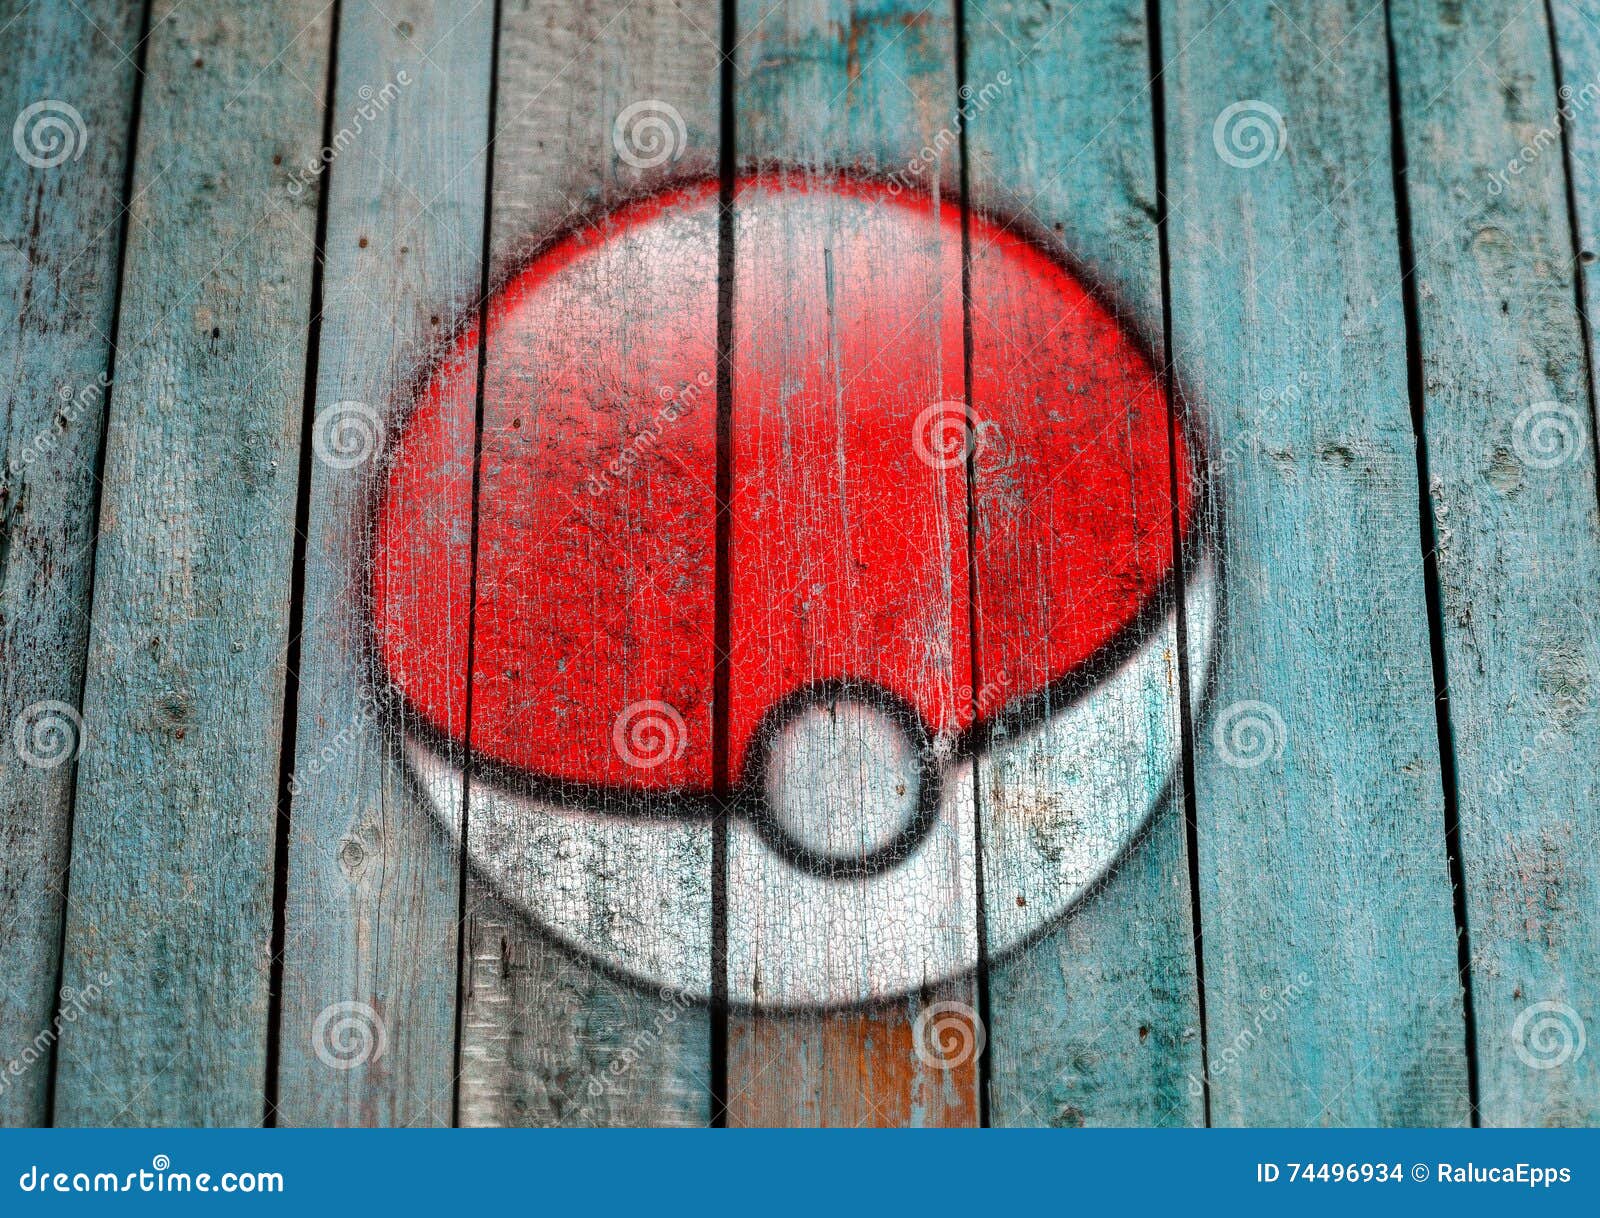 Pokémon Jogos Fundo - Imagens grátis no Pixabay - Pixabay